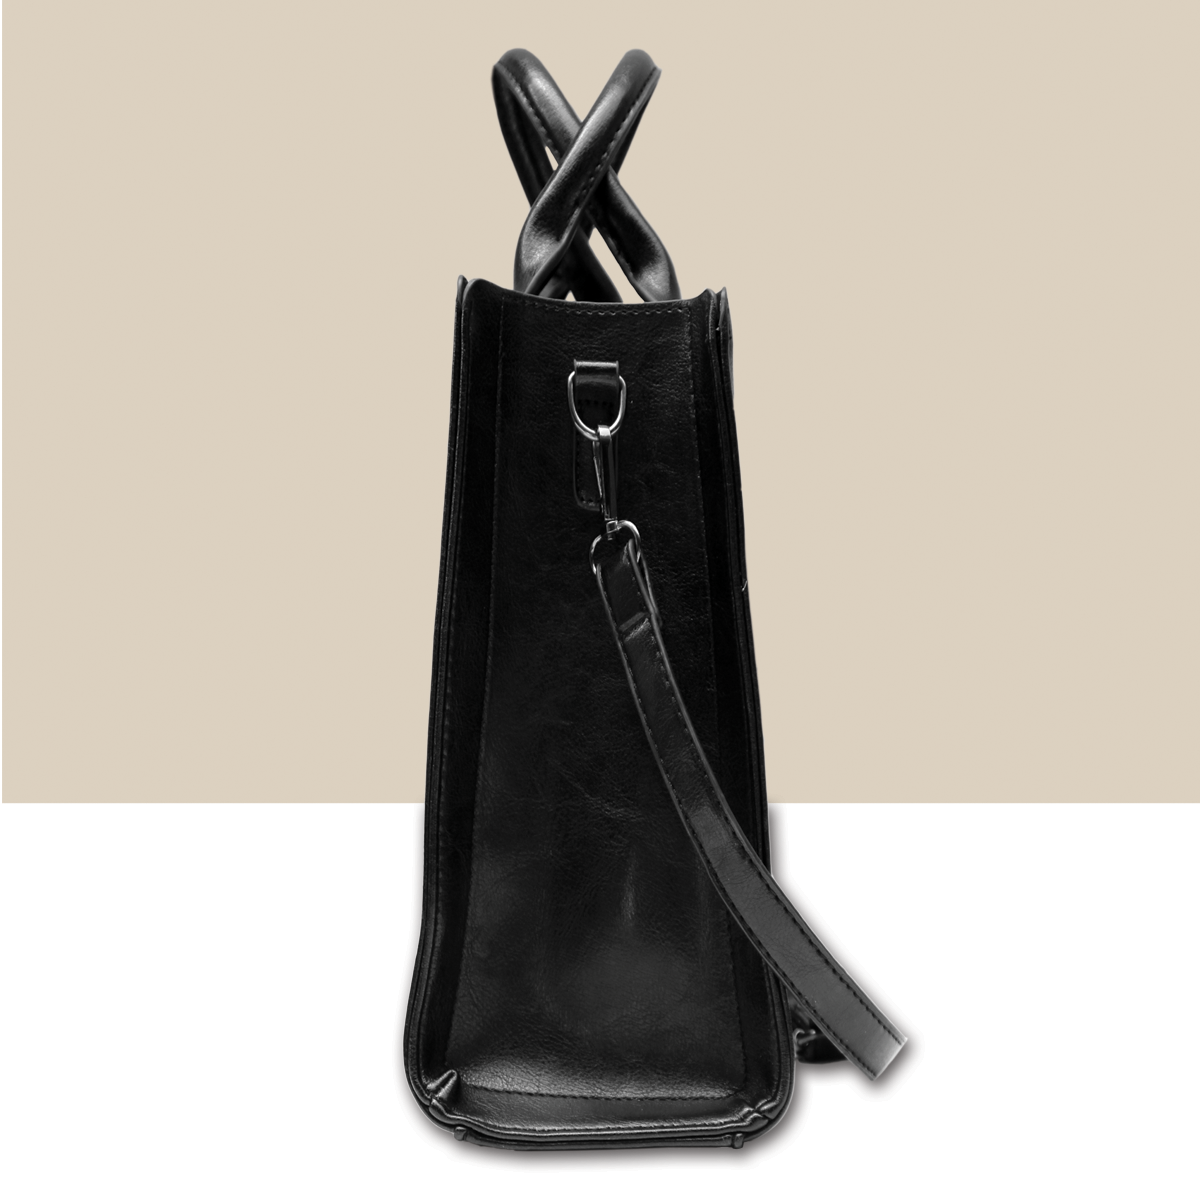 Doberman Pinscher Luxury Handbag V1